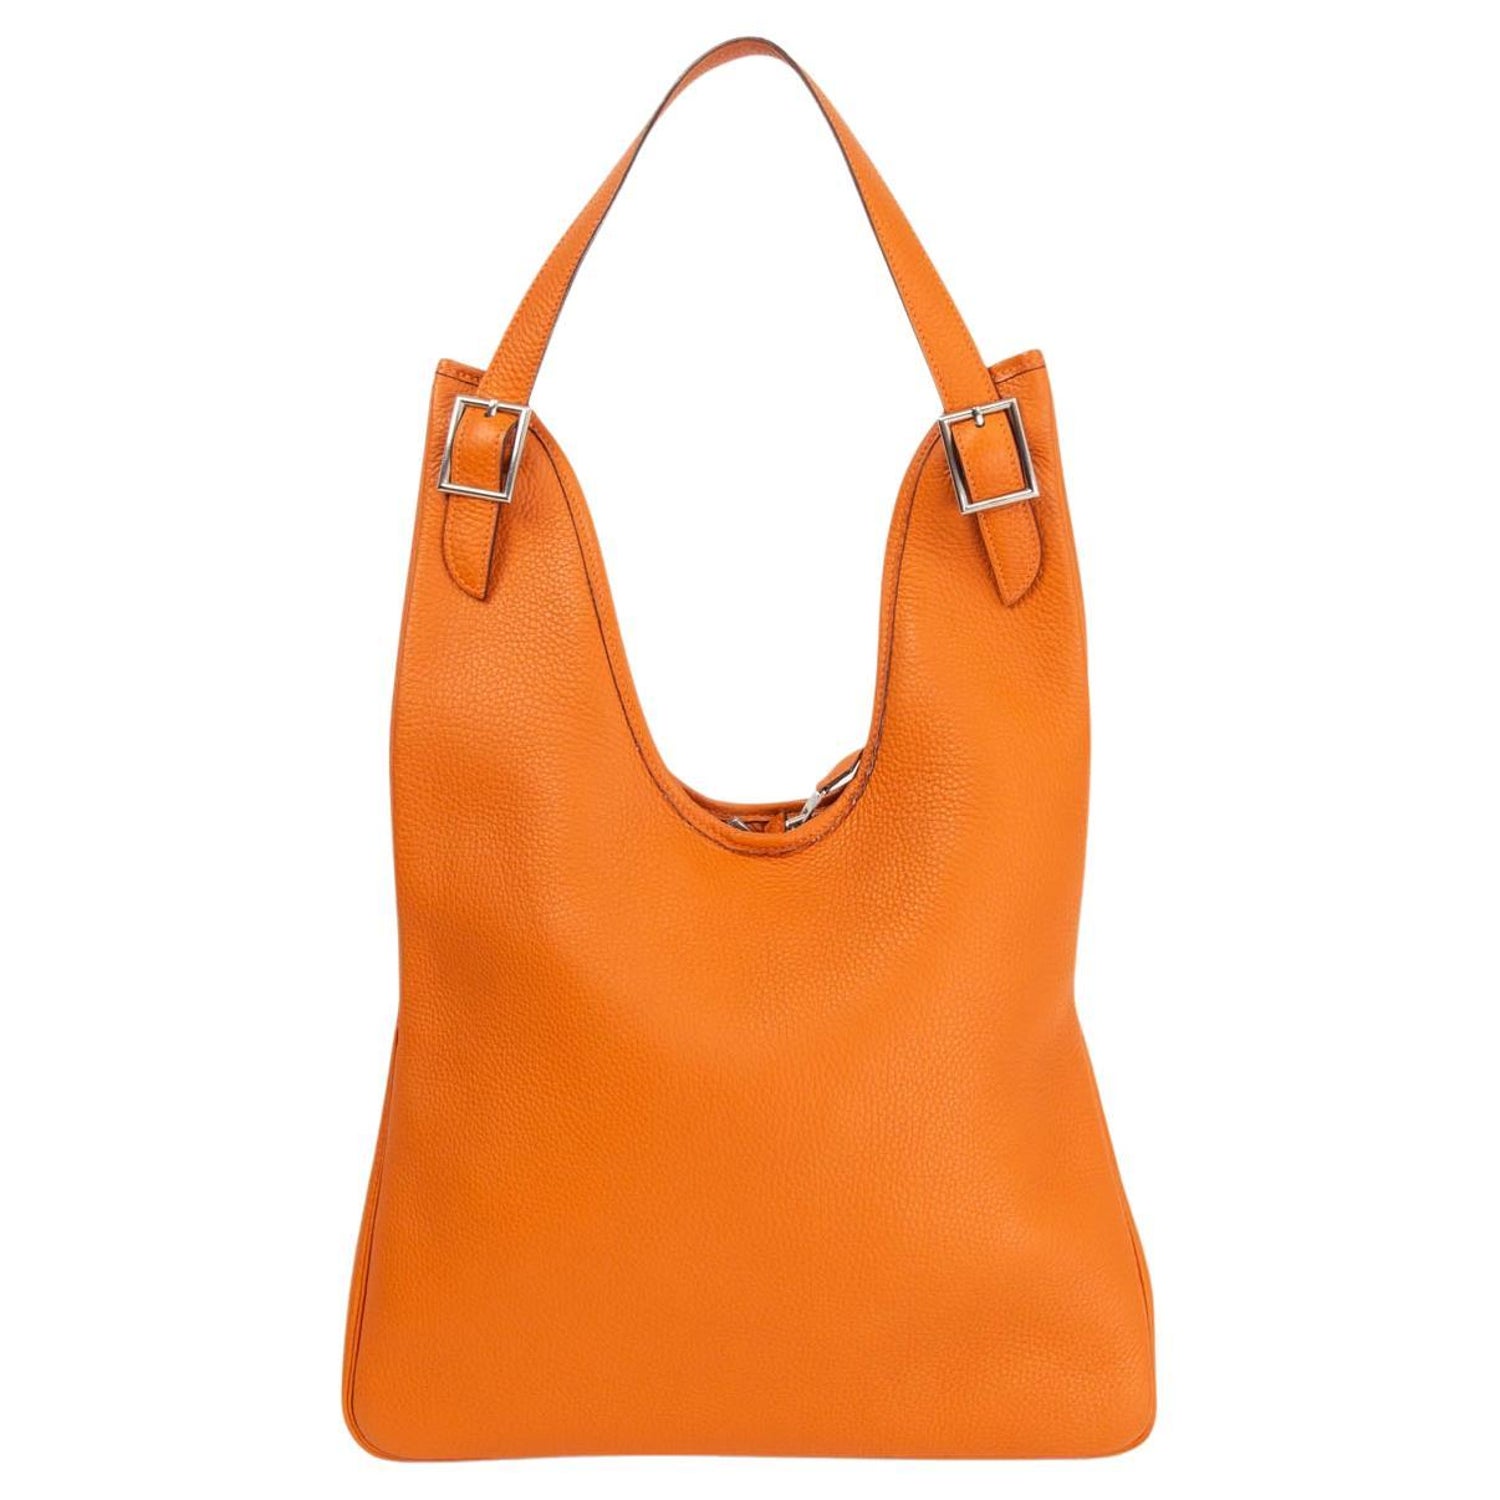 Hermes Bag Strap 70cm - 2 For Sale on 1stDibs